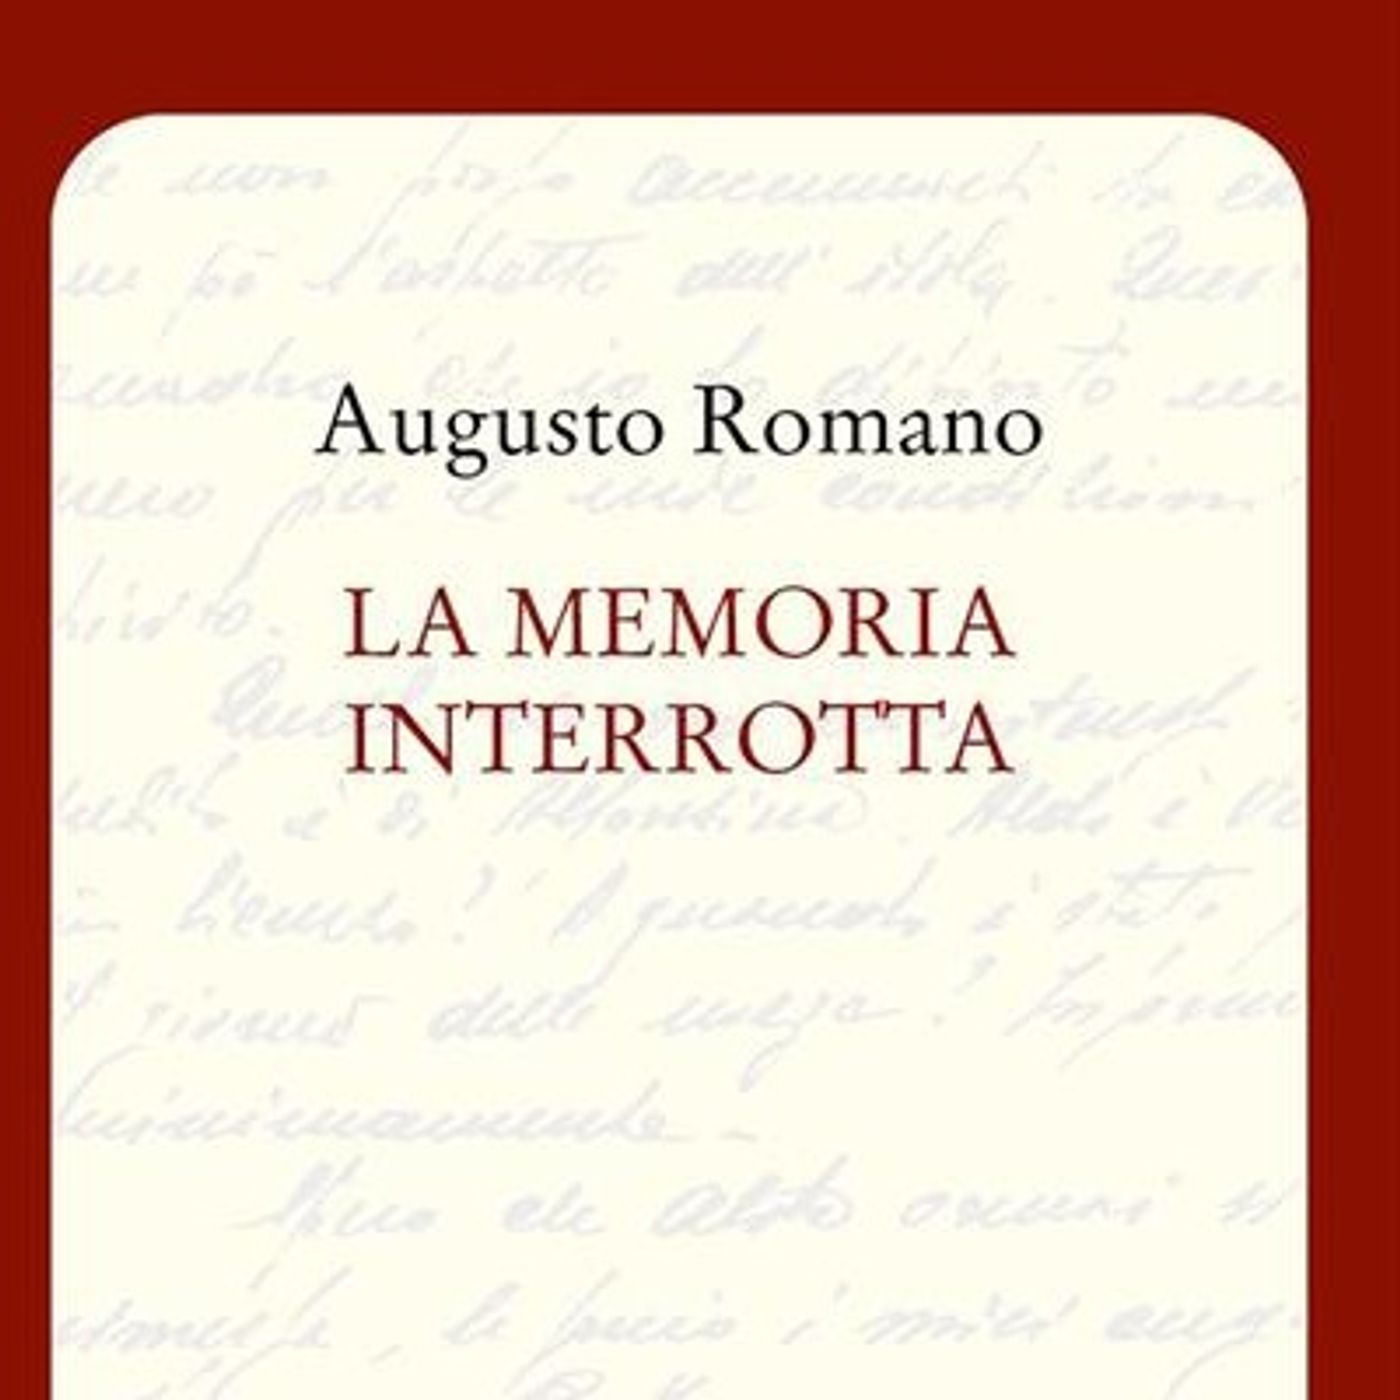 Augusto Romano "La memoria interrotta"